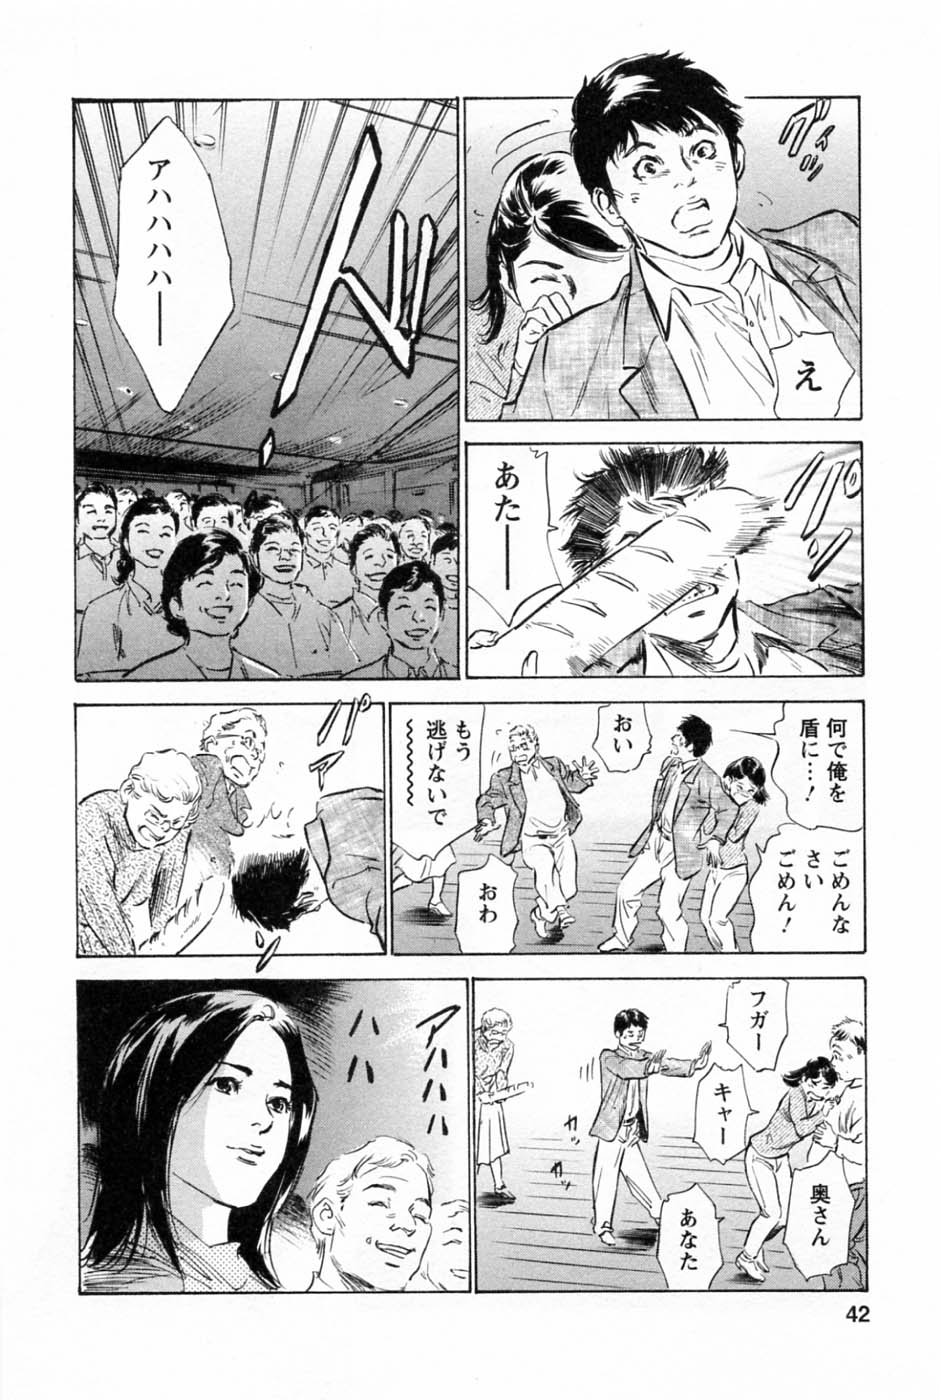 [Tomisawa Chinatsu, Hazuki Kaoru] My Pure Lady Vol.2 page 46 full